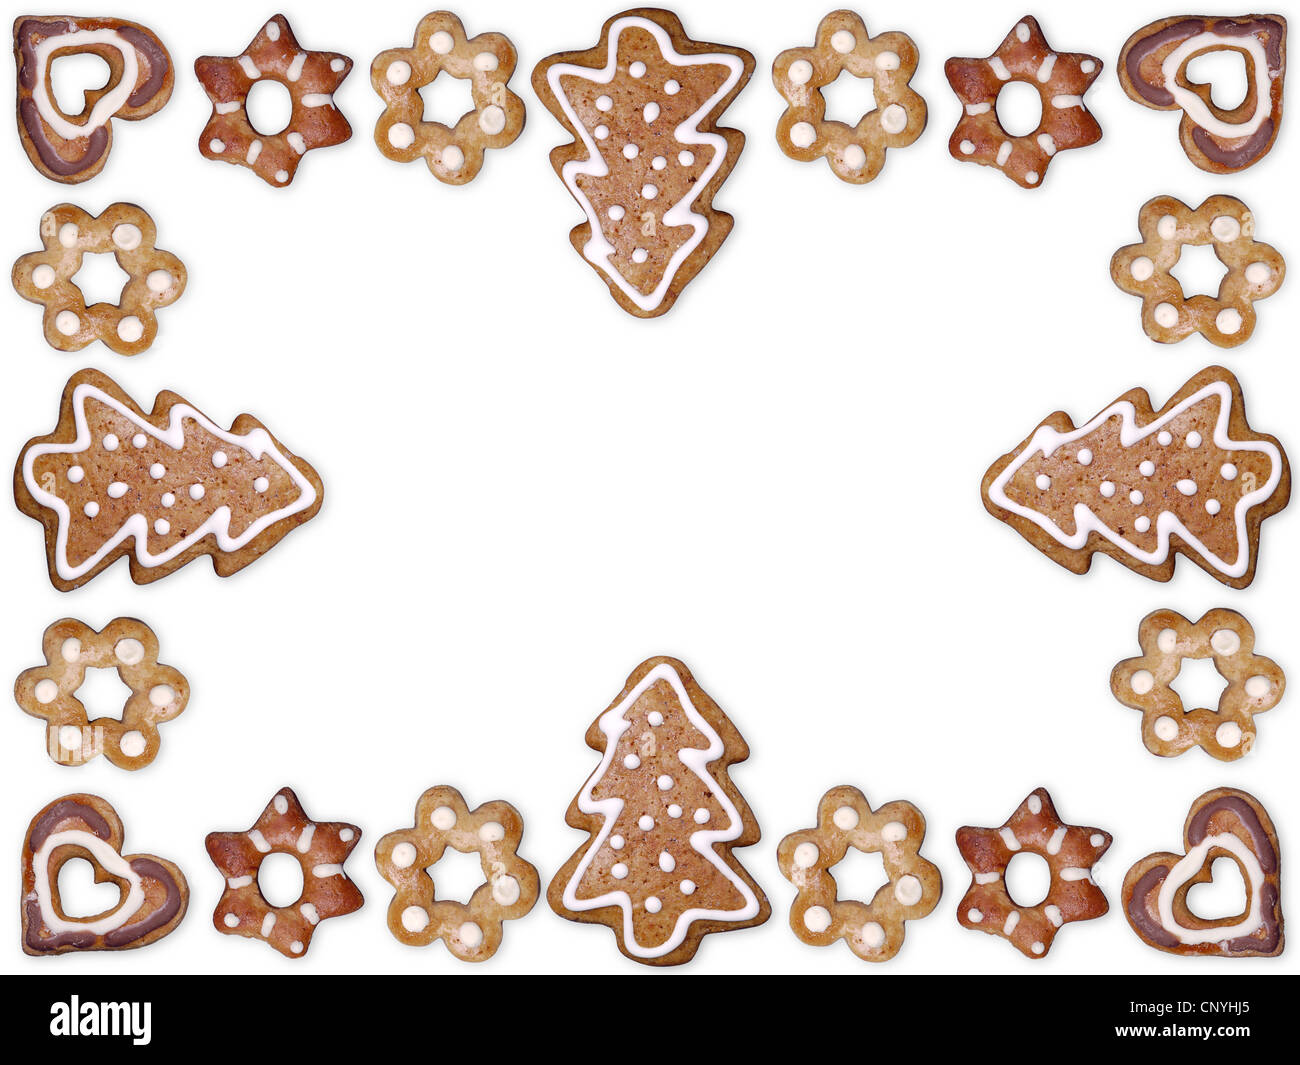 La forme saisonnière décoratif gingerbread cookies organisé dans le châssis avec fond blanc Banque D'Images